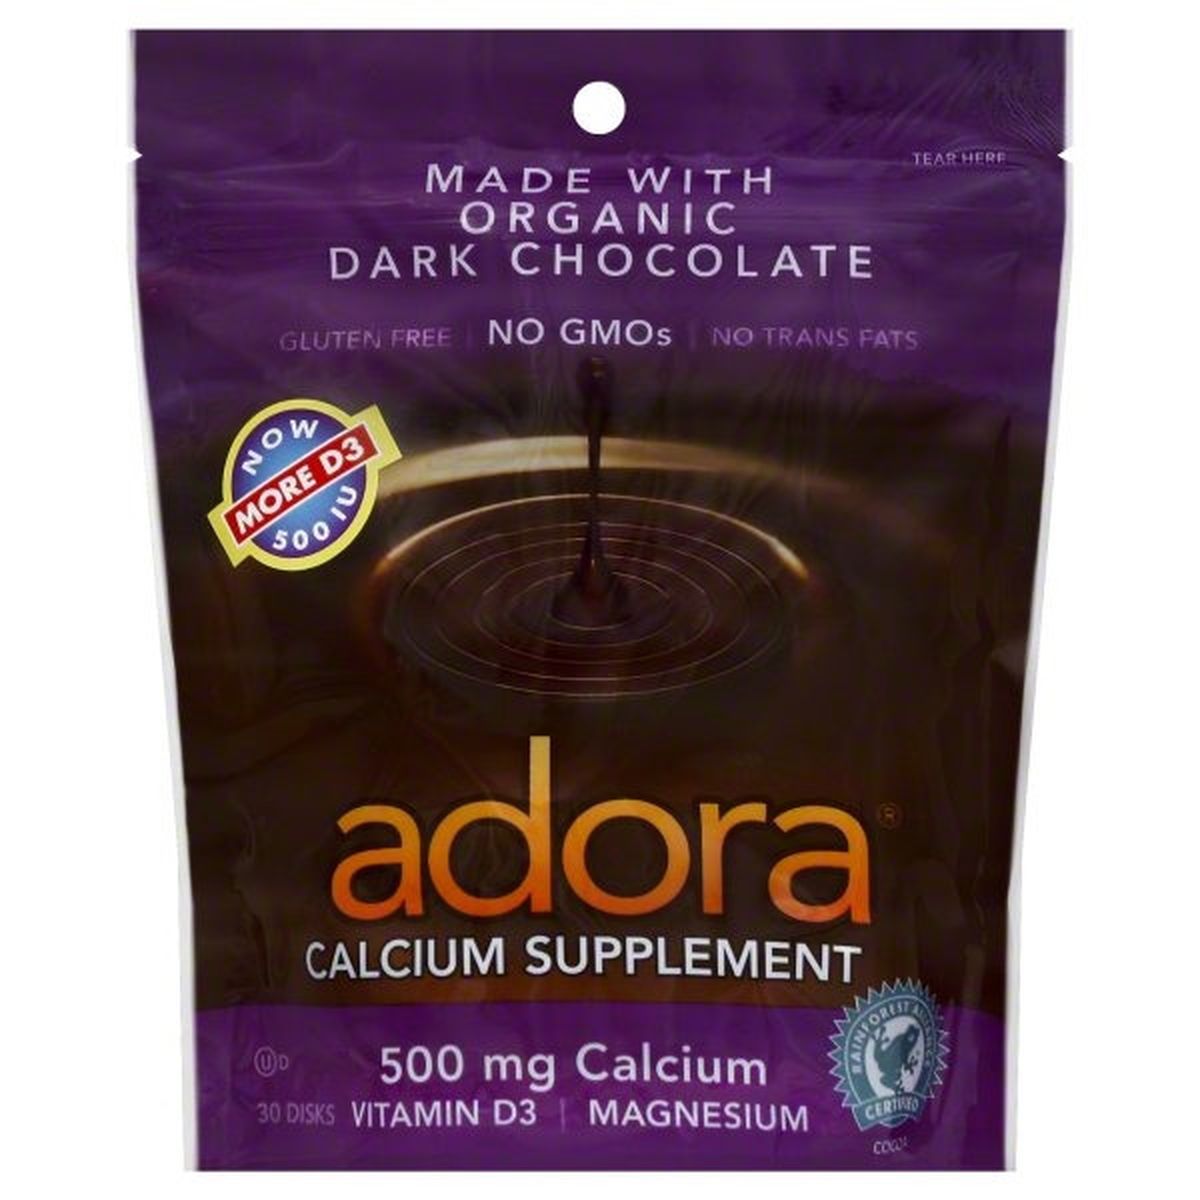 Calories in Adora Calcium Supplement, Dark Chocolate